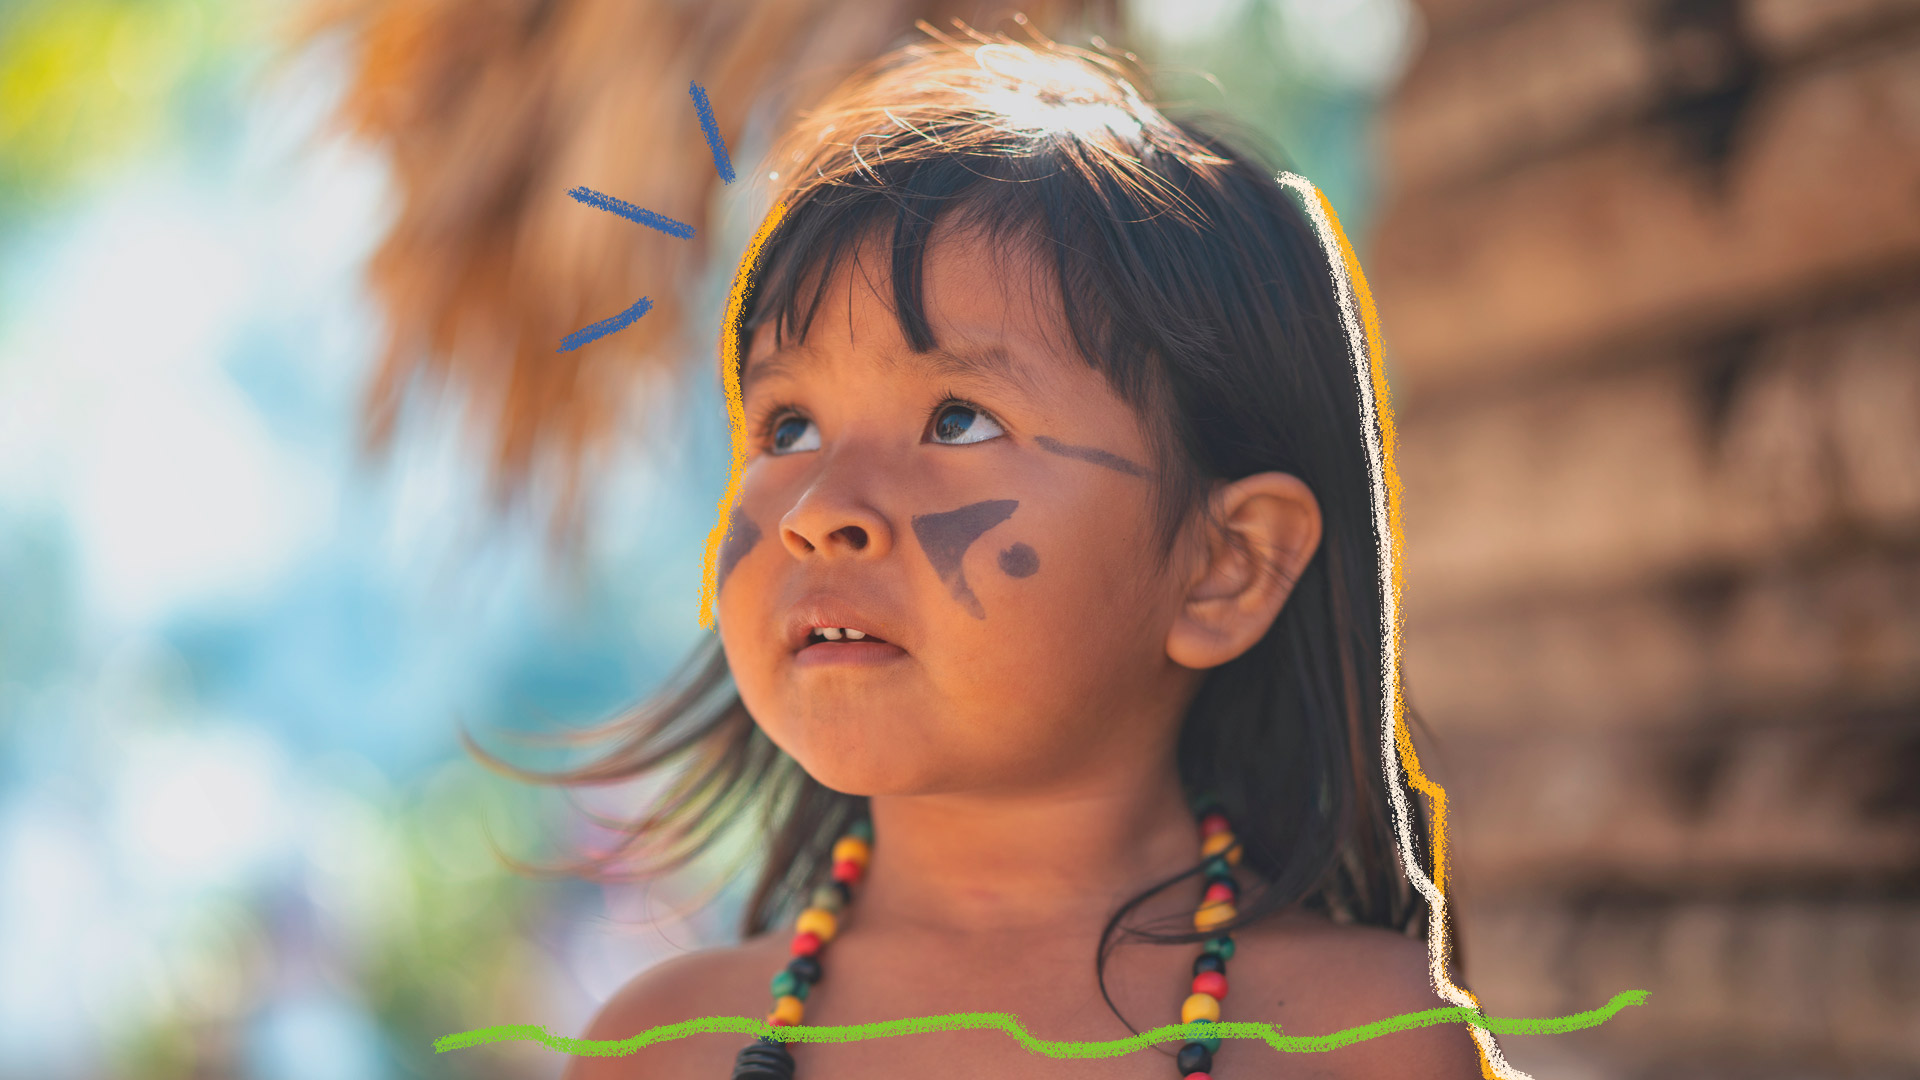 Imagem de uma menina indígena com o rosto pintado e um colar colorido, aparece em matéria sobre podcast da Unicef que foca em histórias amazônicas